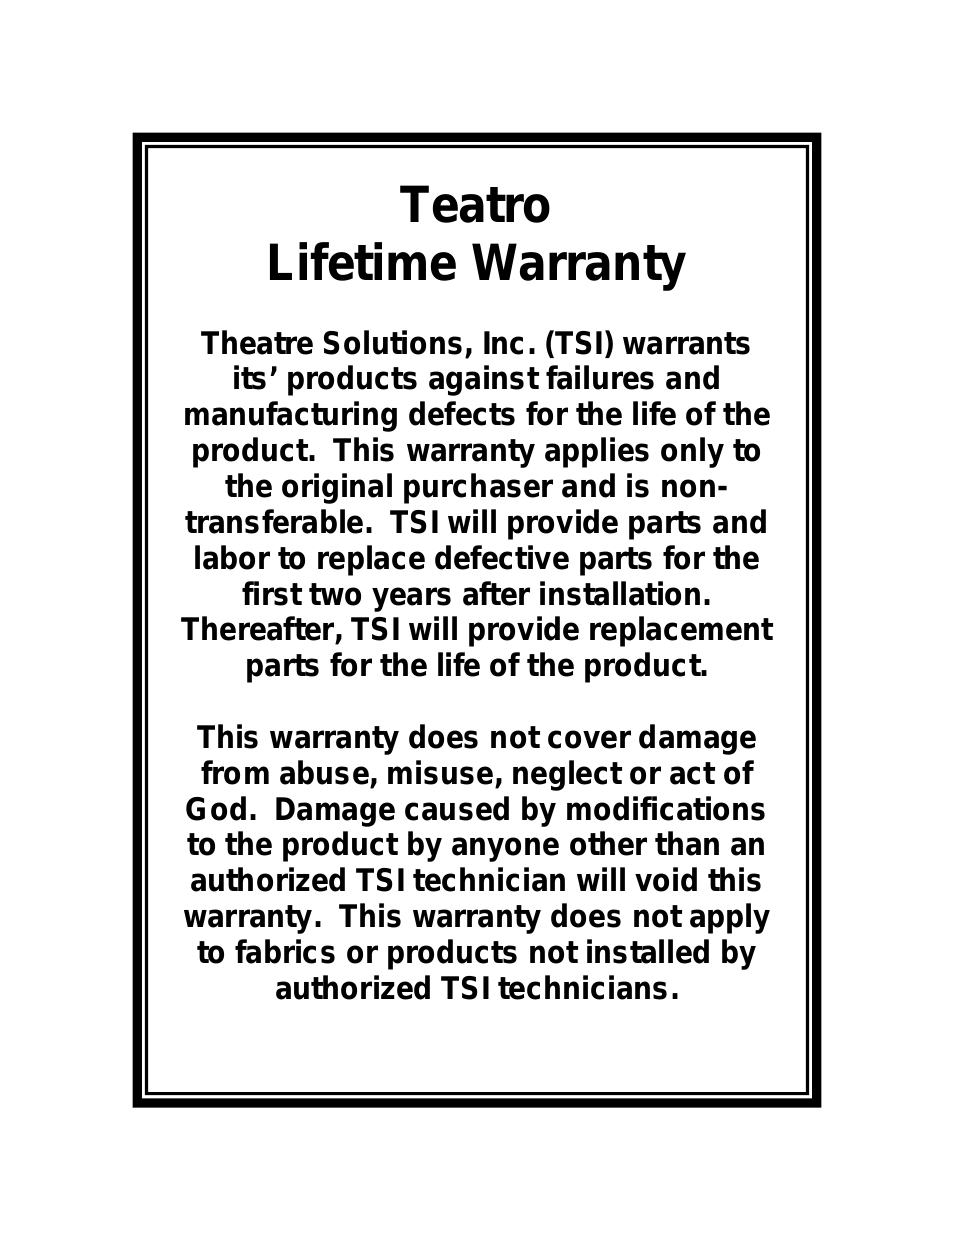 Teatro Warranty